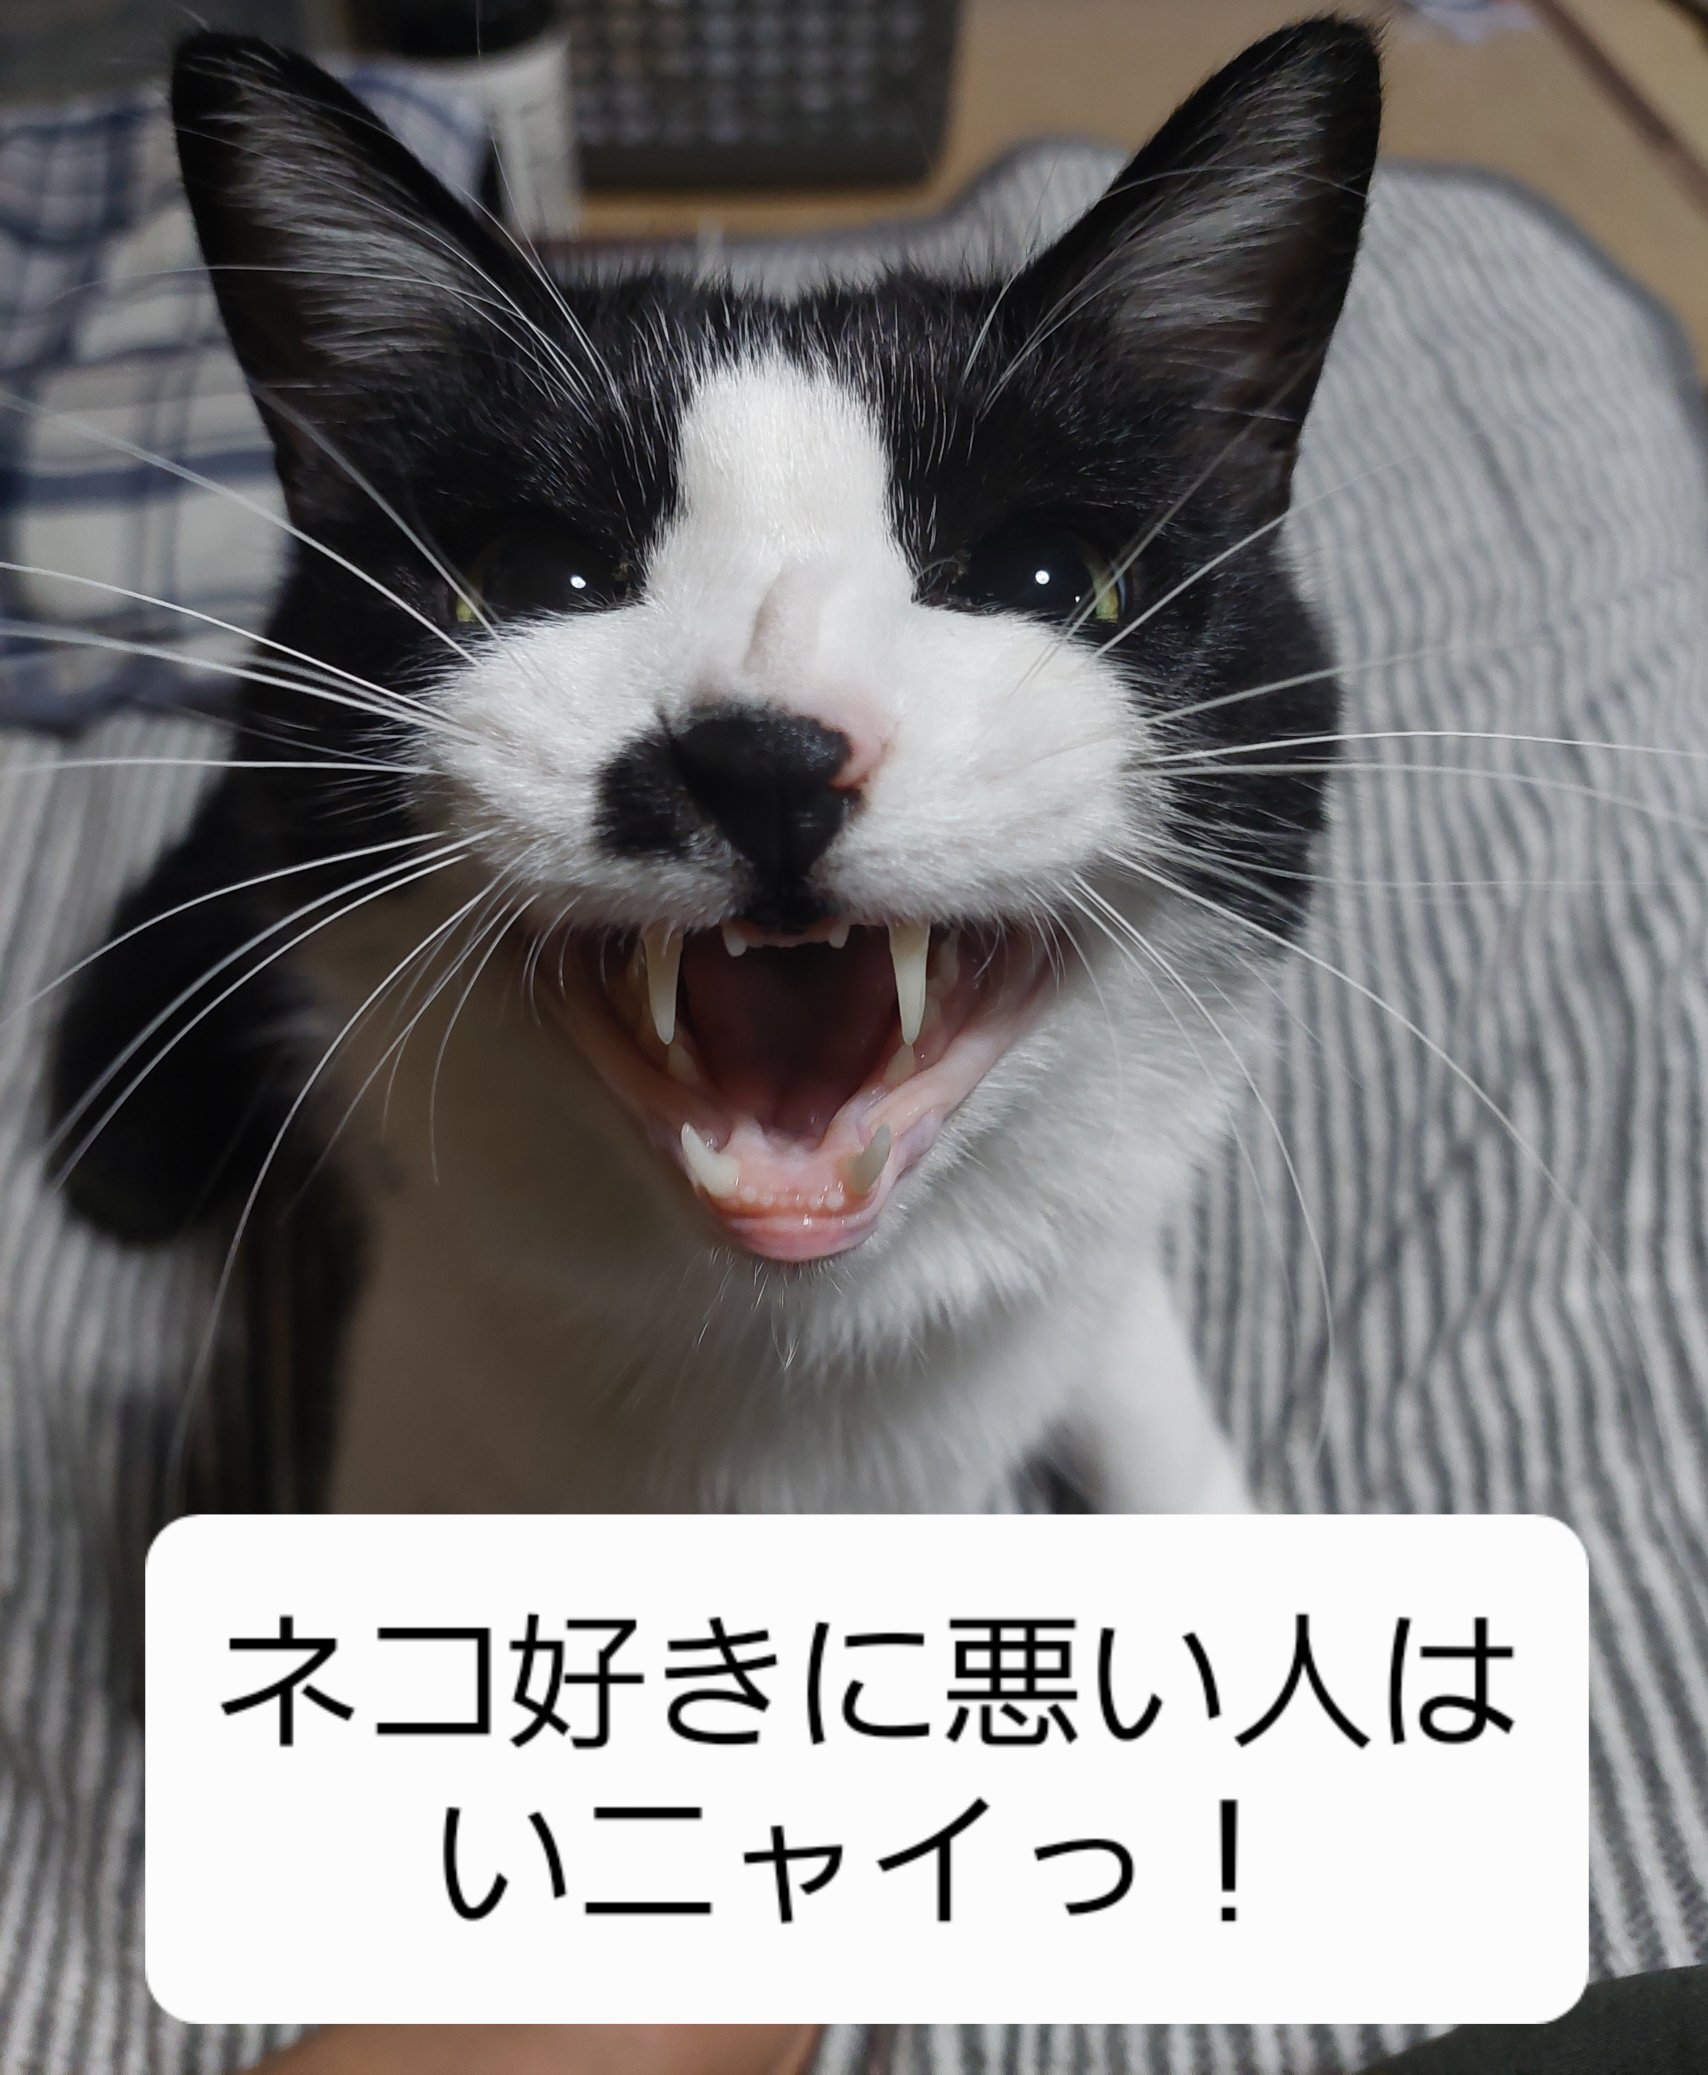 白黒猫 - Twitter Search / Twitter